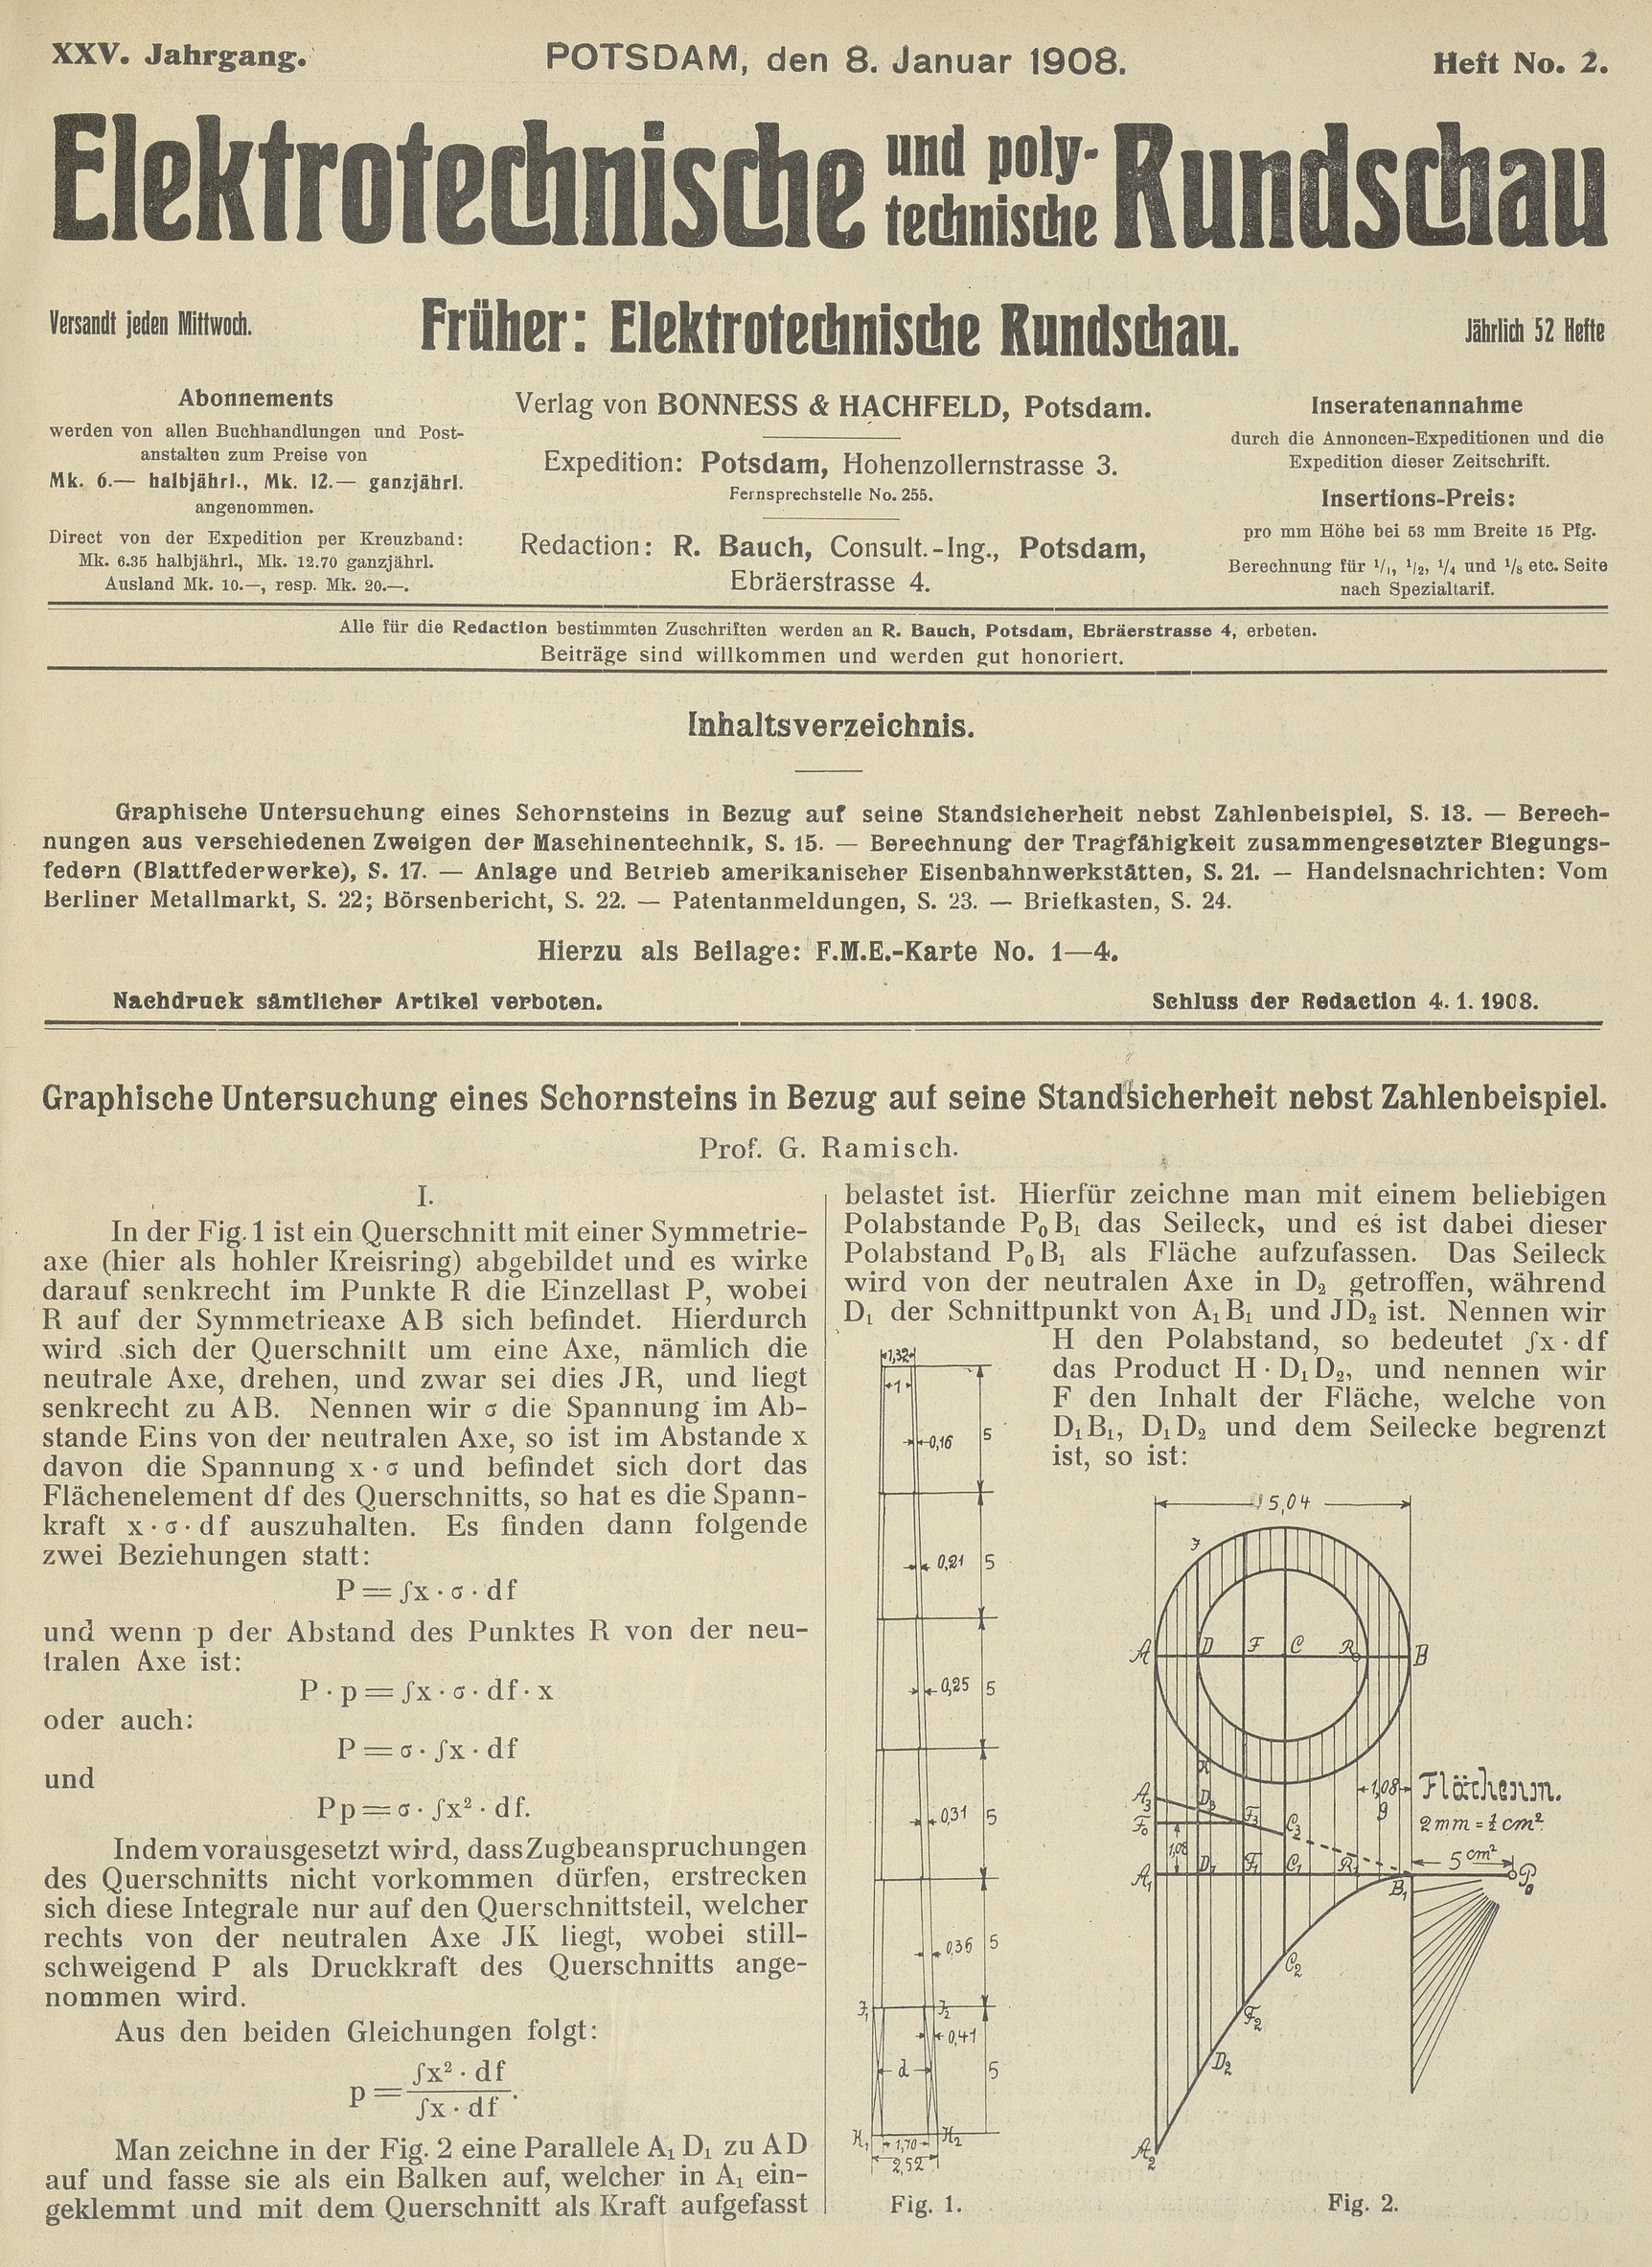 Elektrotechnische und polytechnische Rundschau, XXV. Jahrgang, Heft No. 2